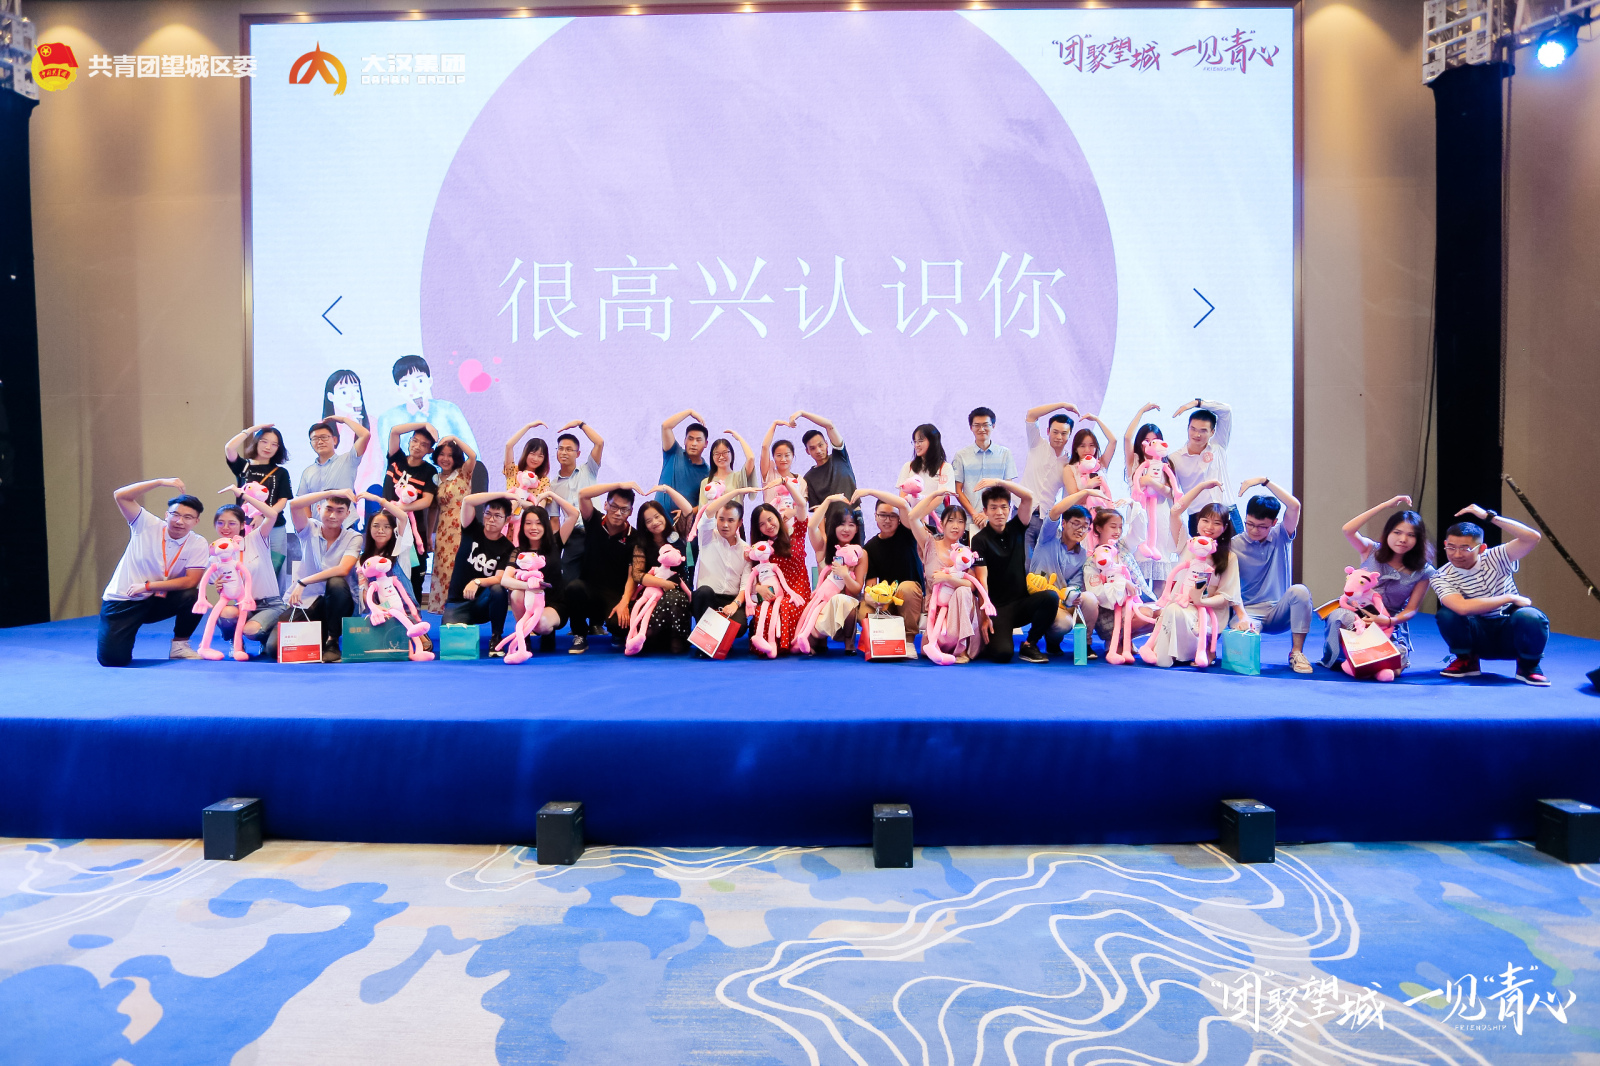 望城区教师节专场联谊活动举行  240余名青年男女浪漫相会